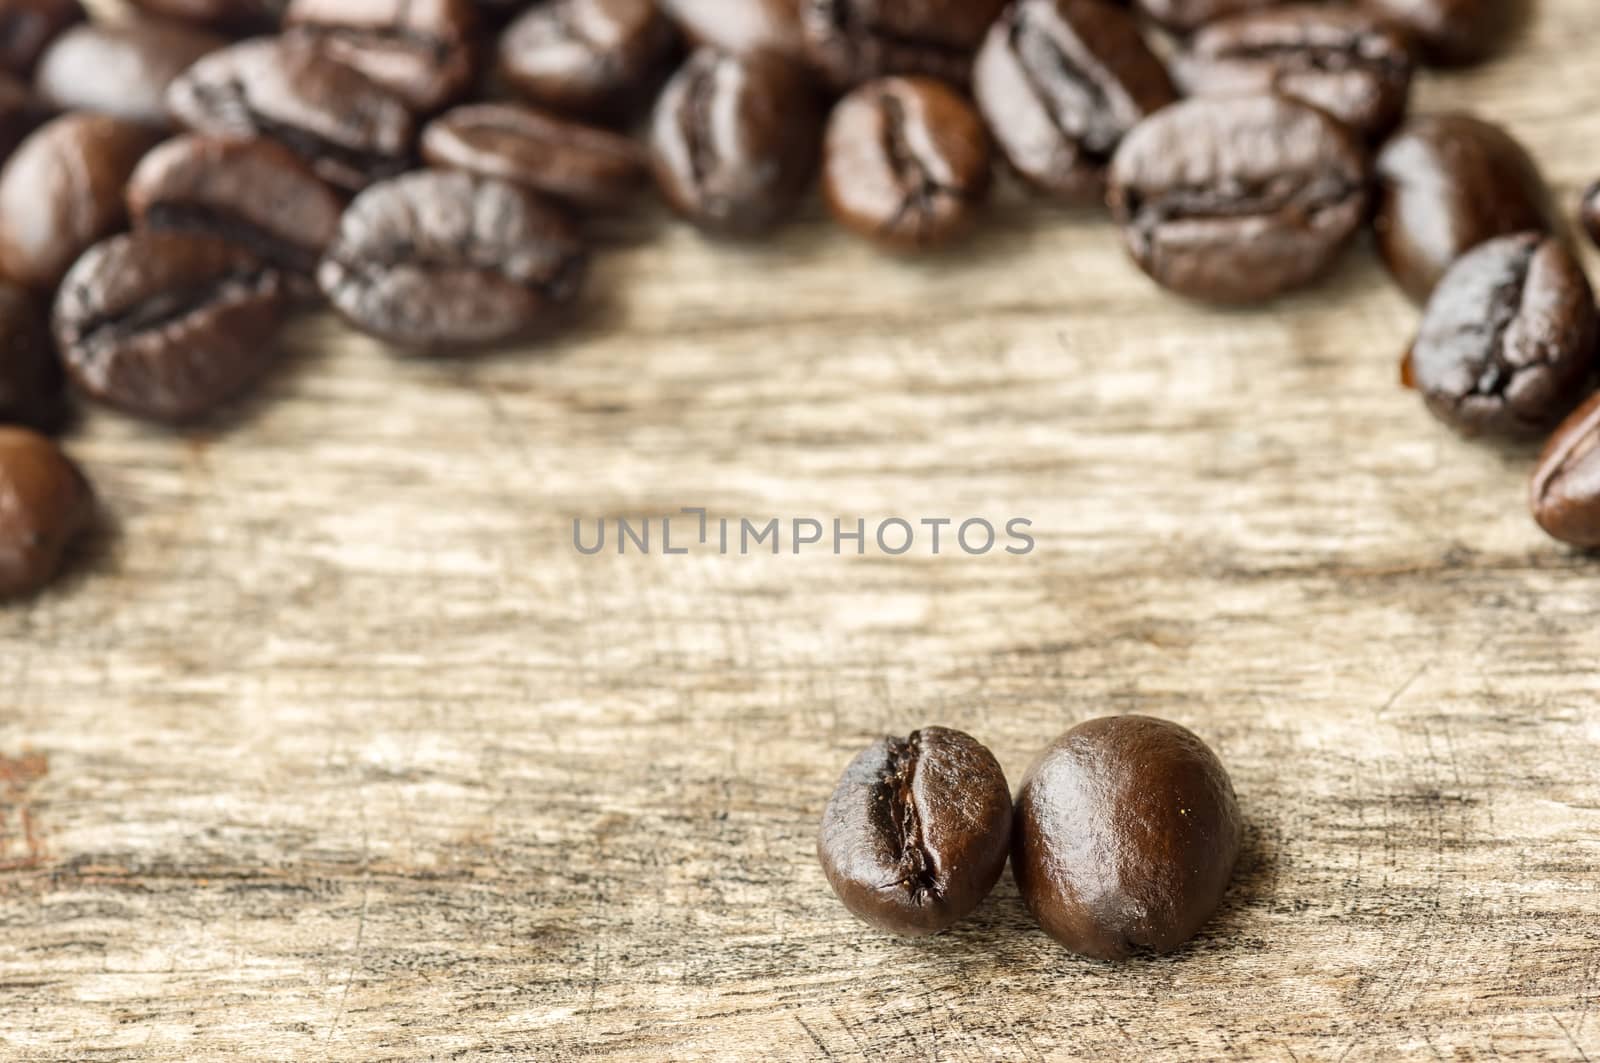 Coffee on grunge wooden background.